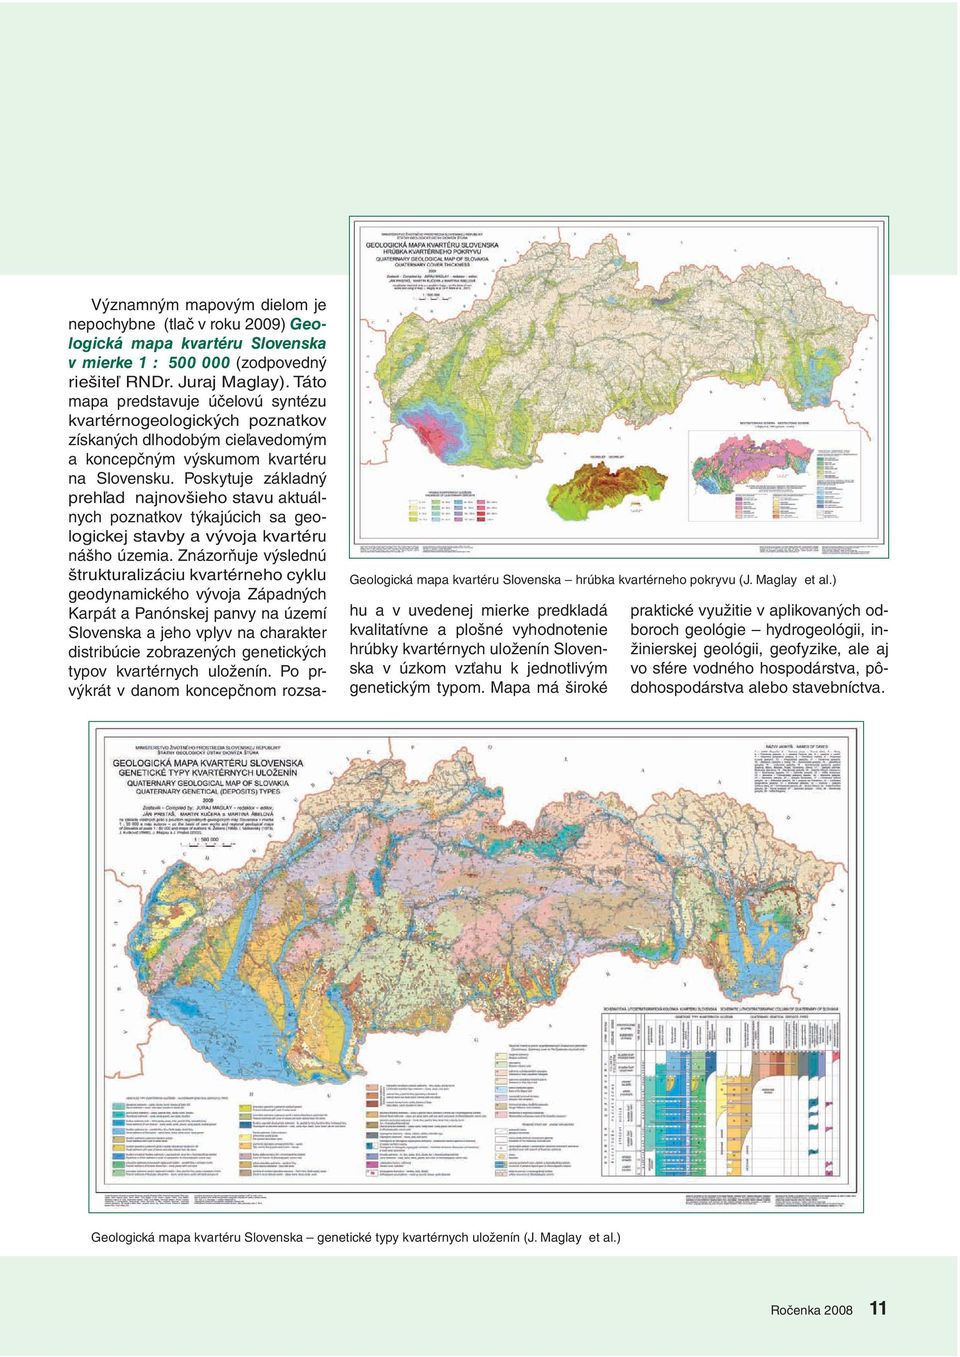 Táto mapa predstavuje účelovú syntézu kvartérnogeologických poznatkov získaných dlhodobým cieľavedomým a koncepčným výskumom kvartéru na Slovensku.